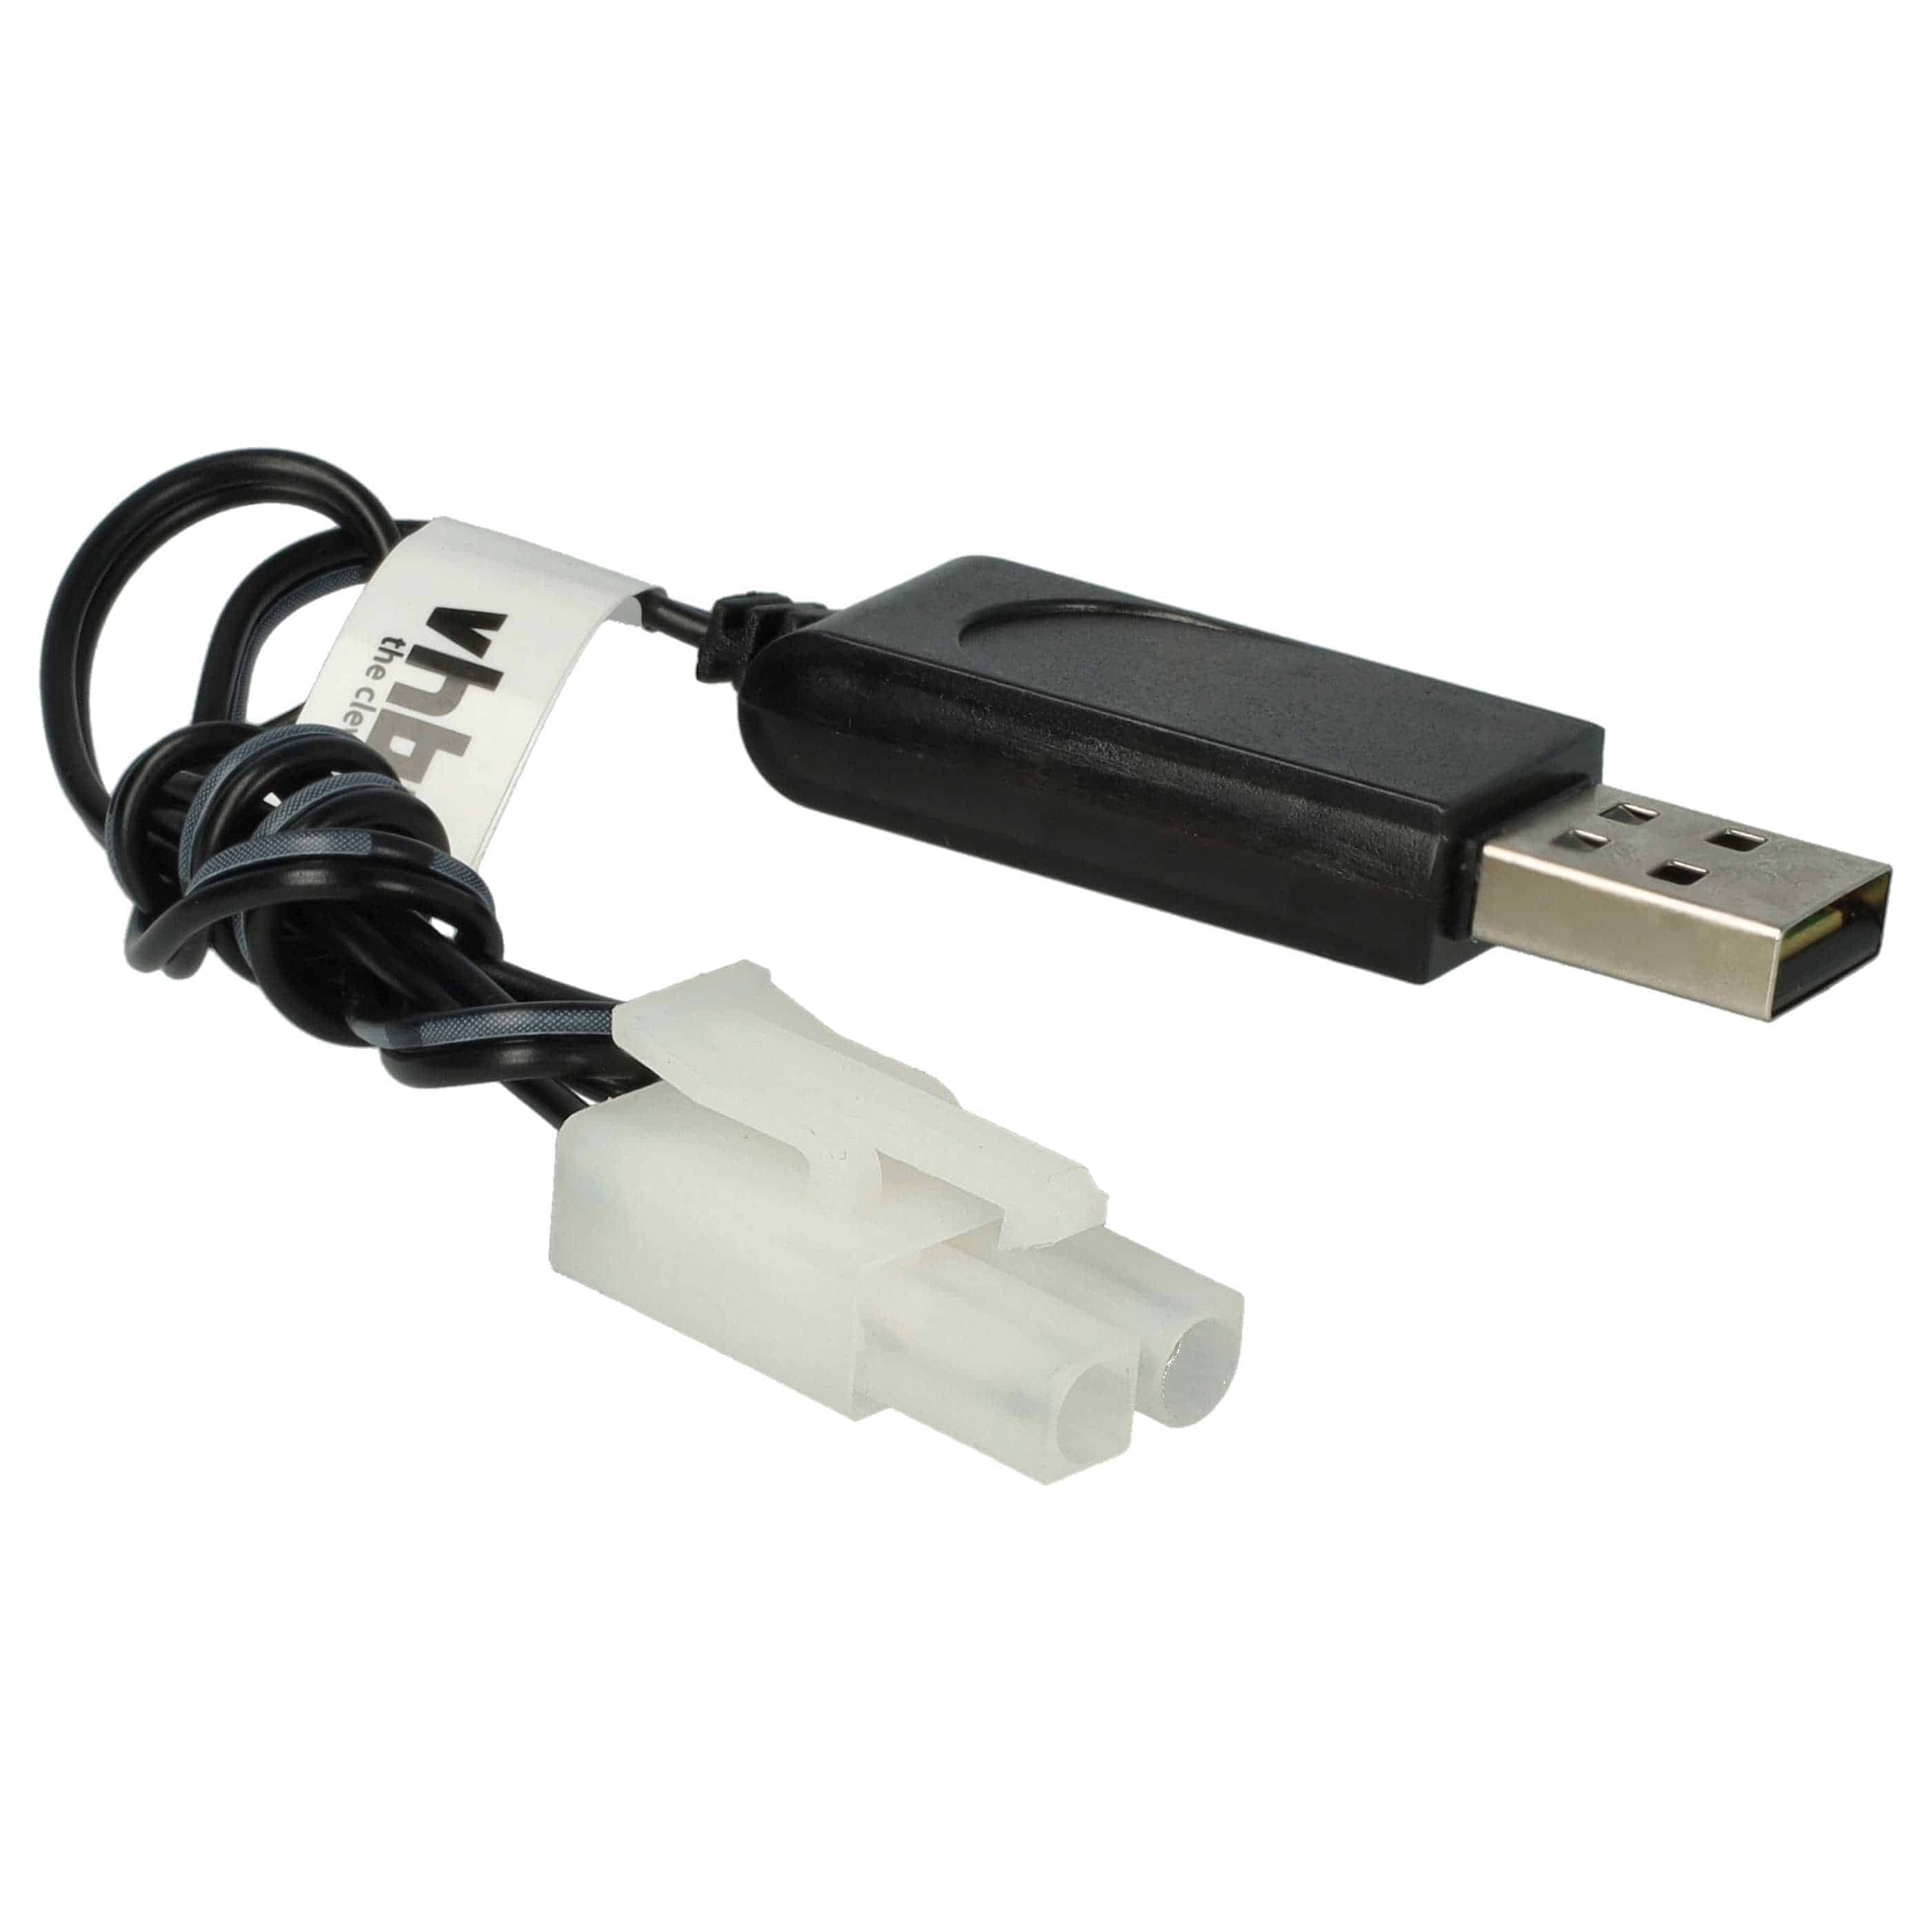 USB-Ladekabel passend für RC-Akkus mit Tamiya-Anschluss, RC-Modellbau Akkupacks - 60cm 9,6V